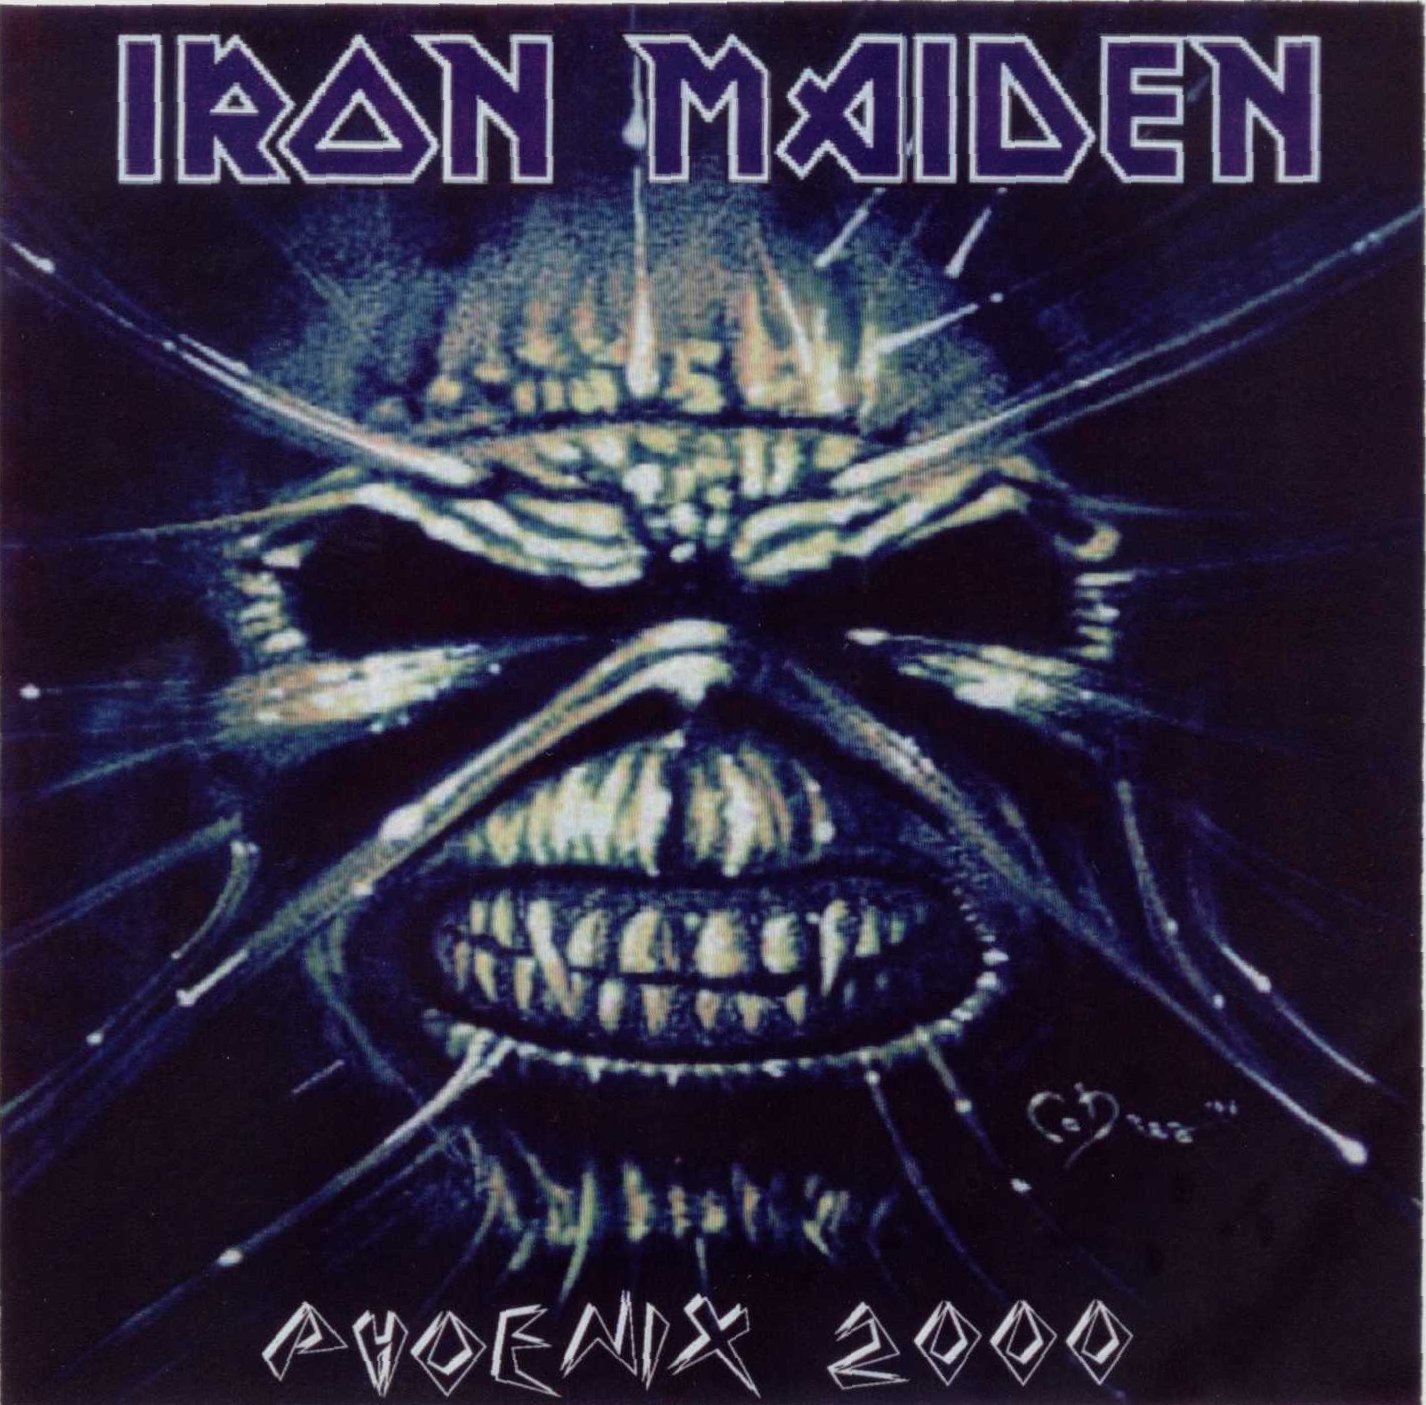 2000-09-09 Desert Sky Pavilion, Phoenix, Arizona, US - Iron Maiden ...